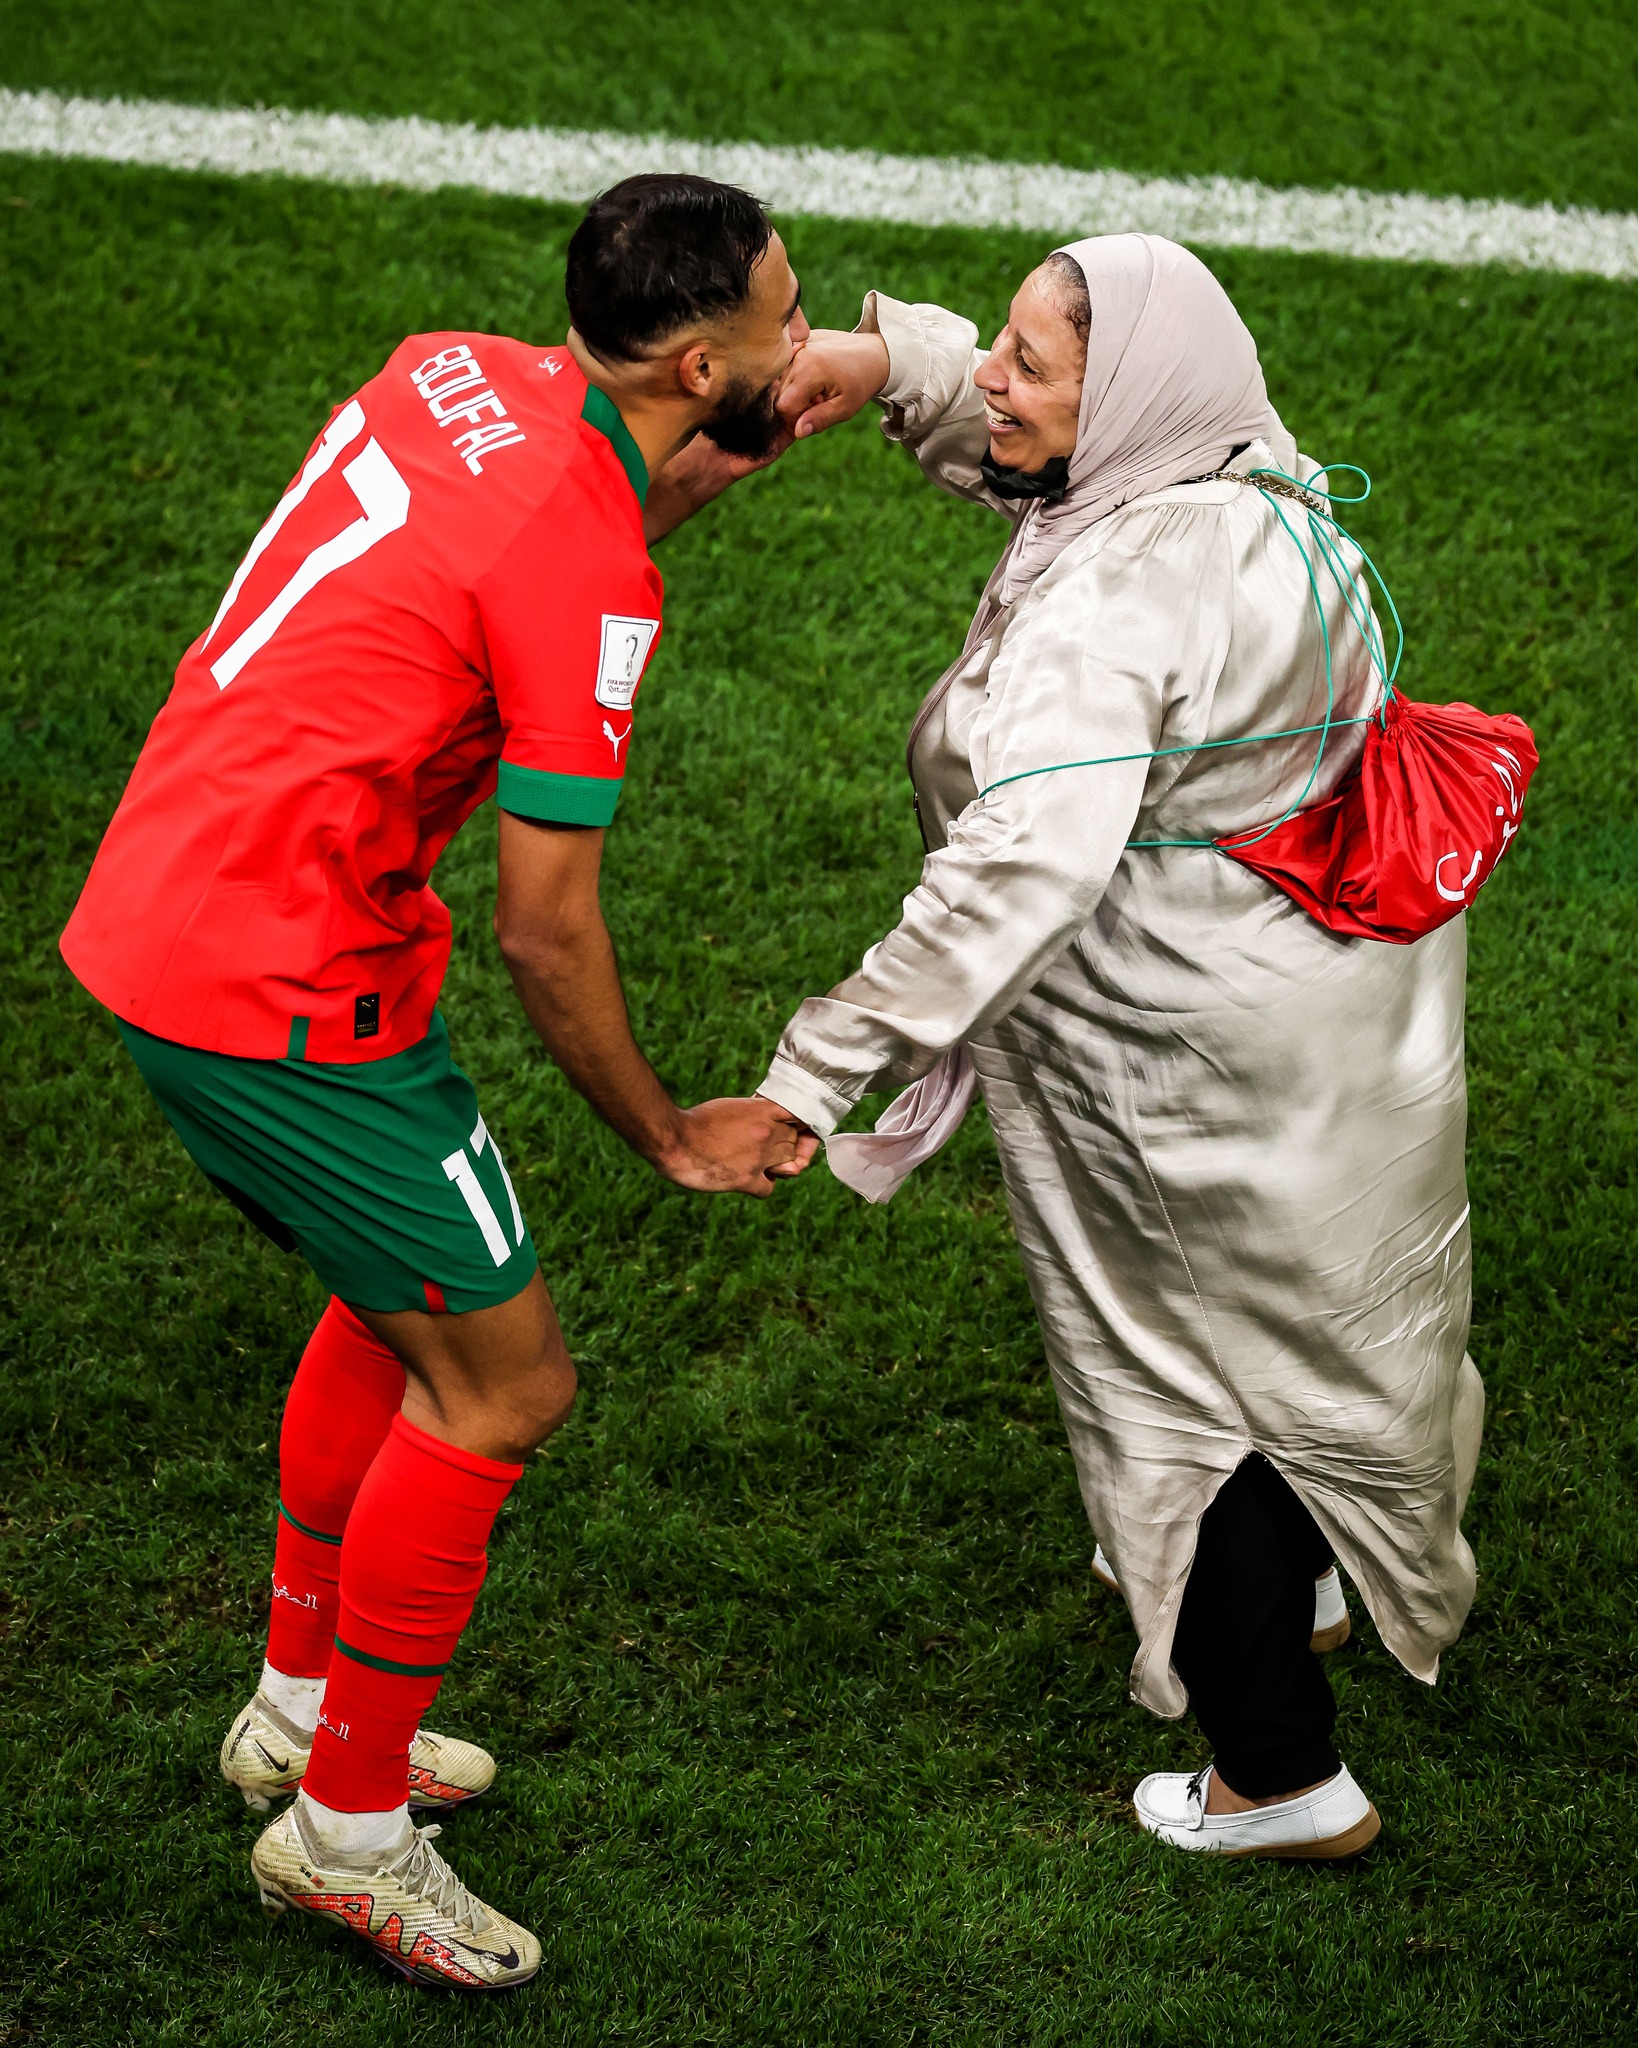 Đội tuyển Maroc liệu có thể làm nên điều kỳ diệu tiếp theo tại World Cup 2022?